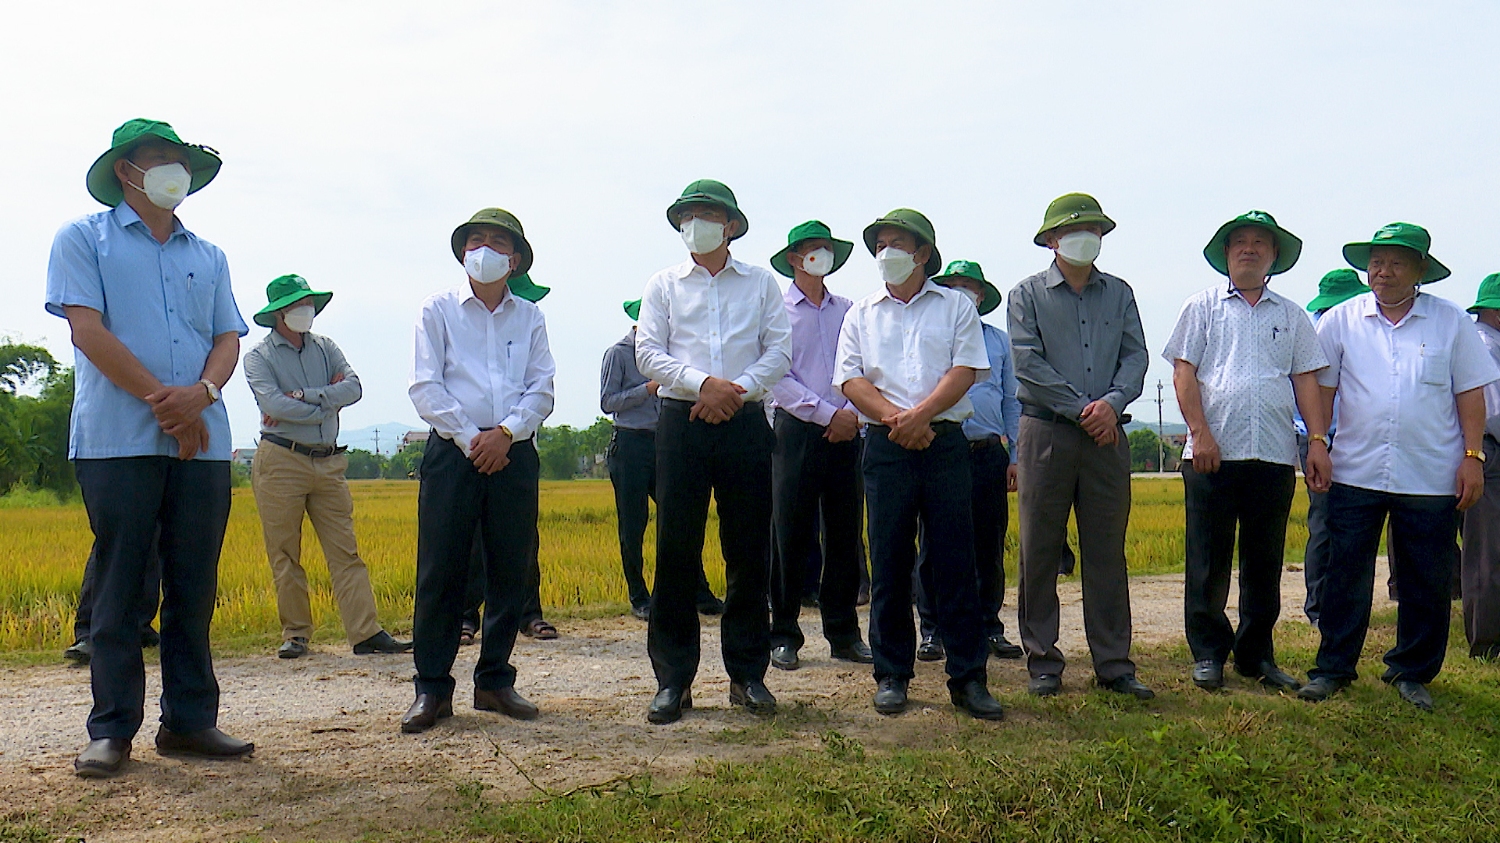 Đồng chí Trương An Ninh, Ủy viên Ban Thường vụ Tỉnh ủy, Bí thư Thị ủy Ba Đồn đánh giá cao năng suất và chất lượng giống lúa ST25.